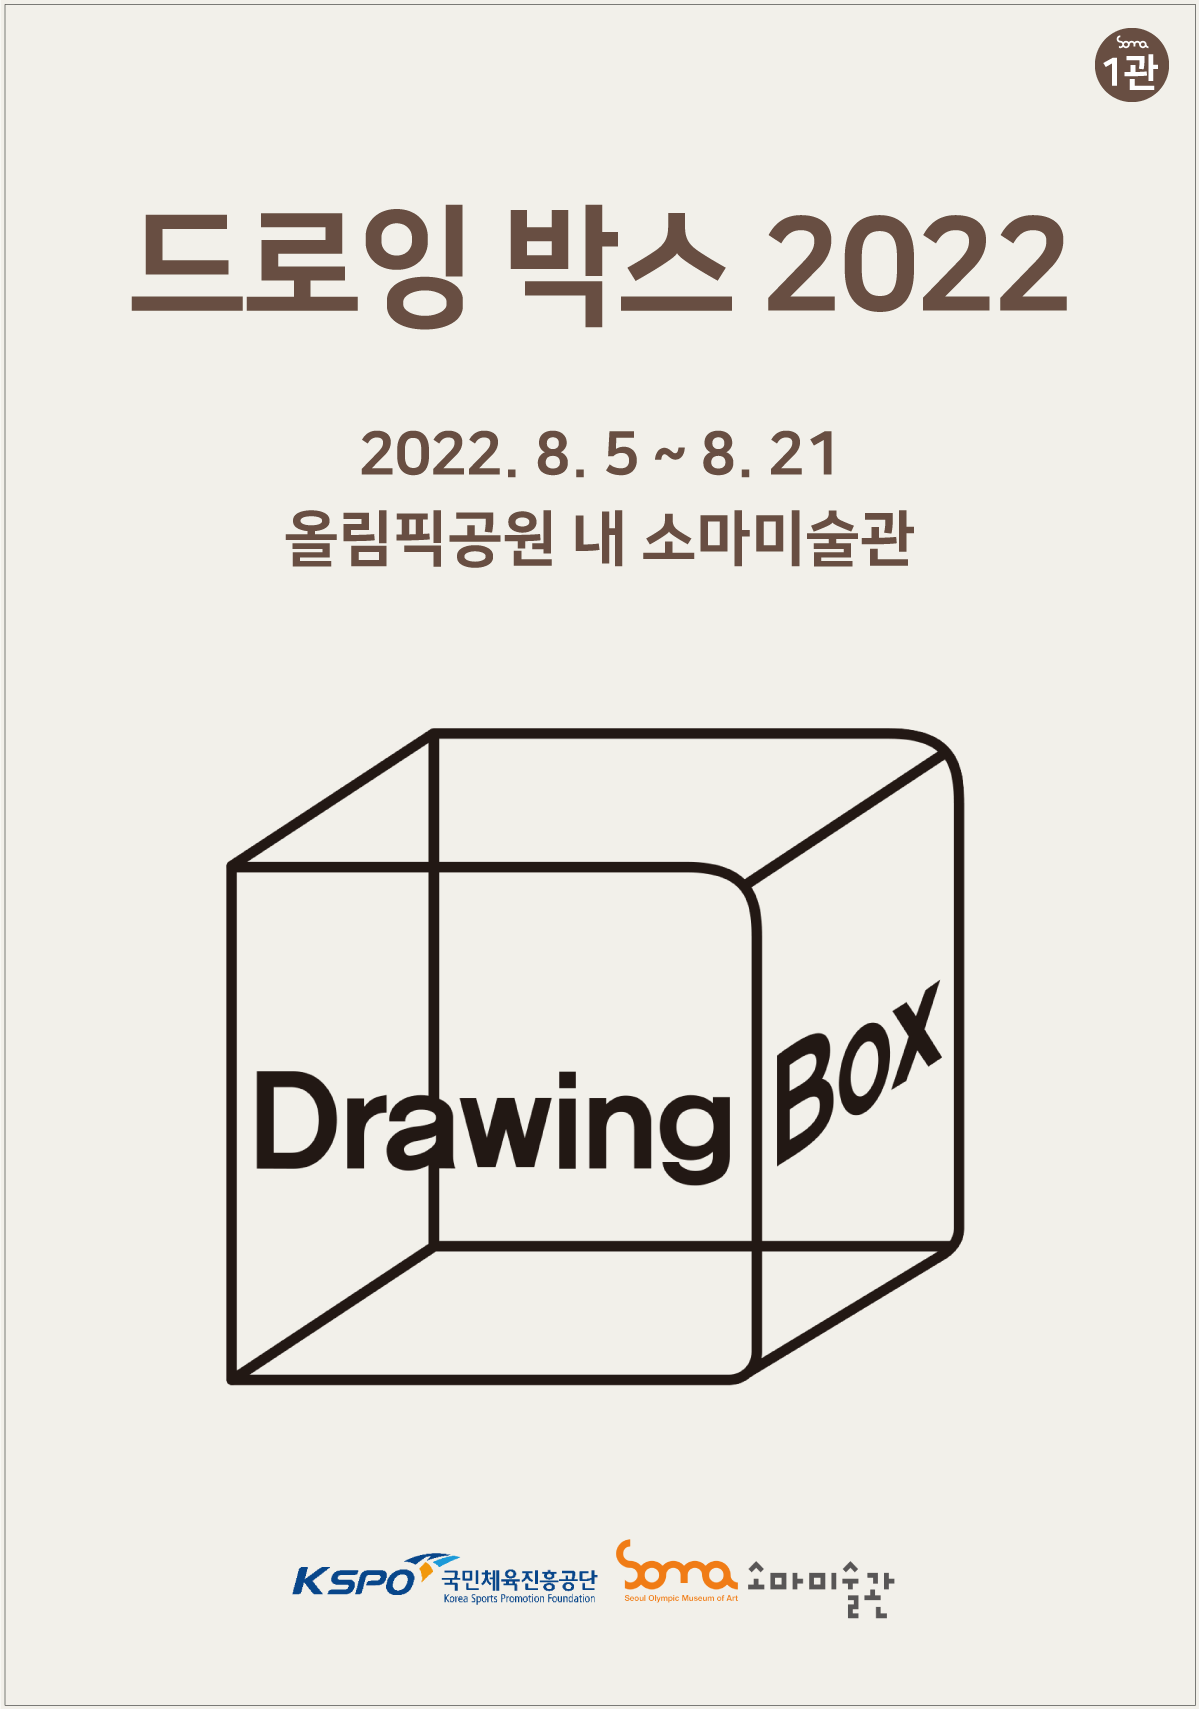 [전시][소마미술관] 드로잉 박스 2022